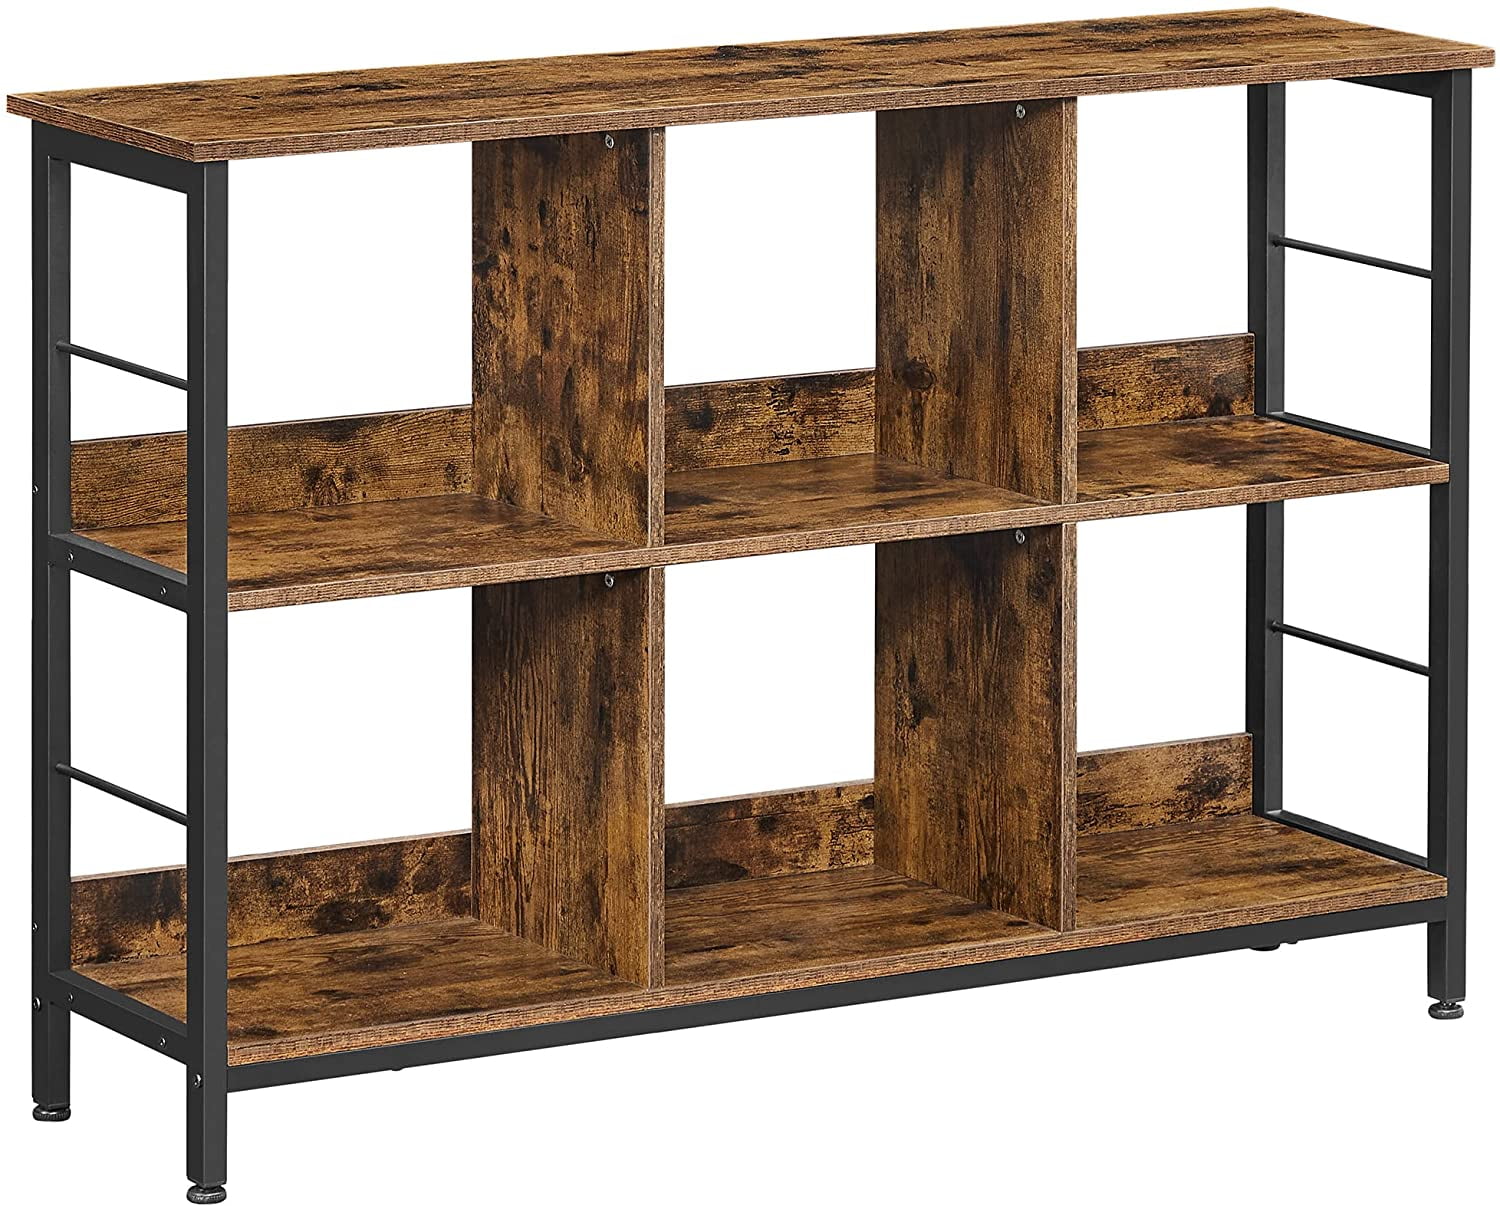 Brown FIVEGIVEN 3 Tier Bookshelf Rustic Industrial Bookshelf Wood and Metal 